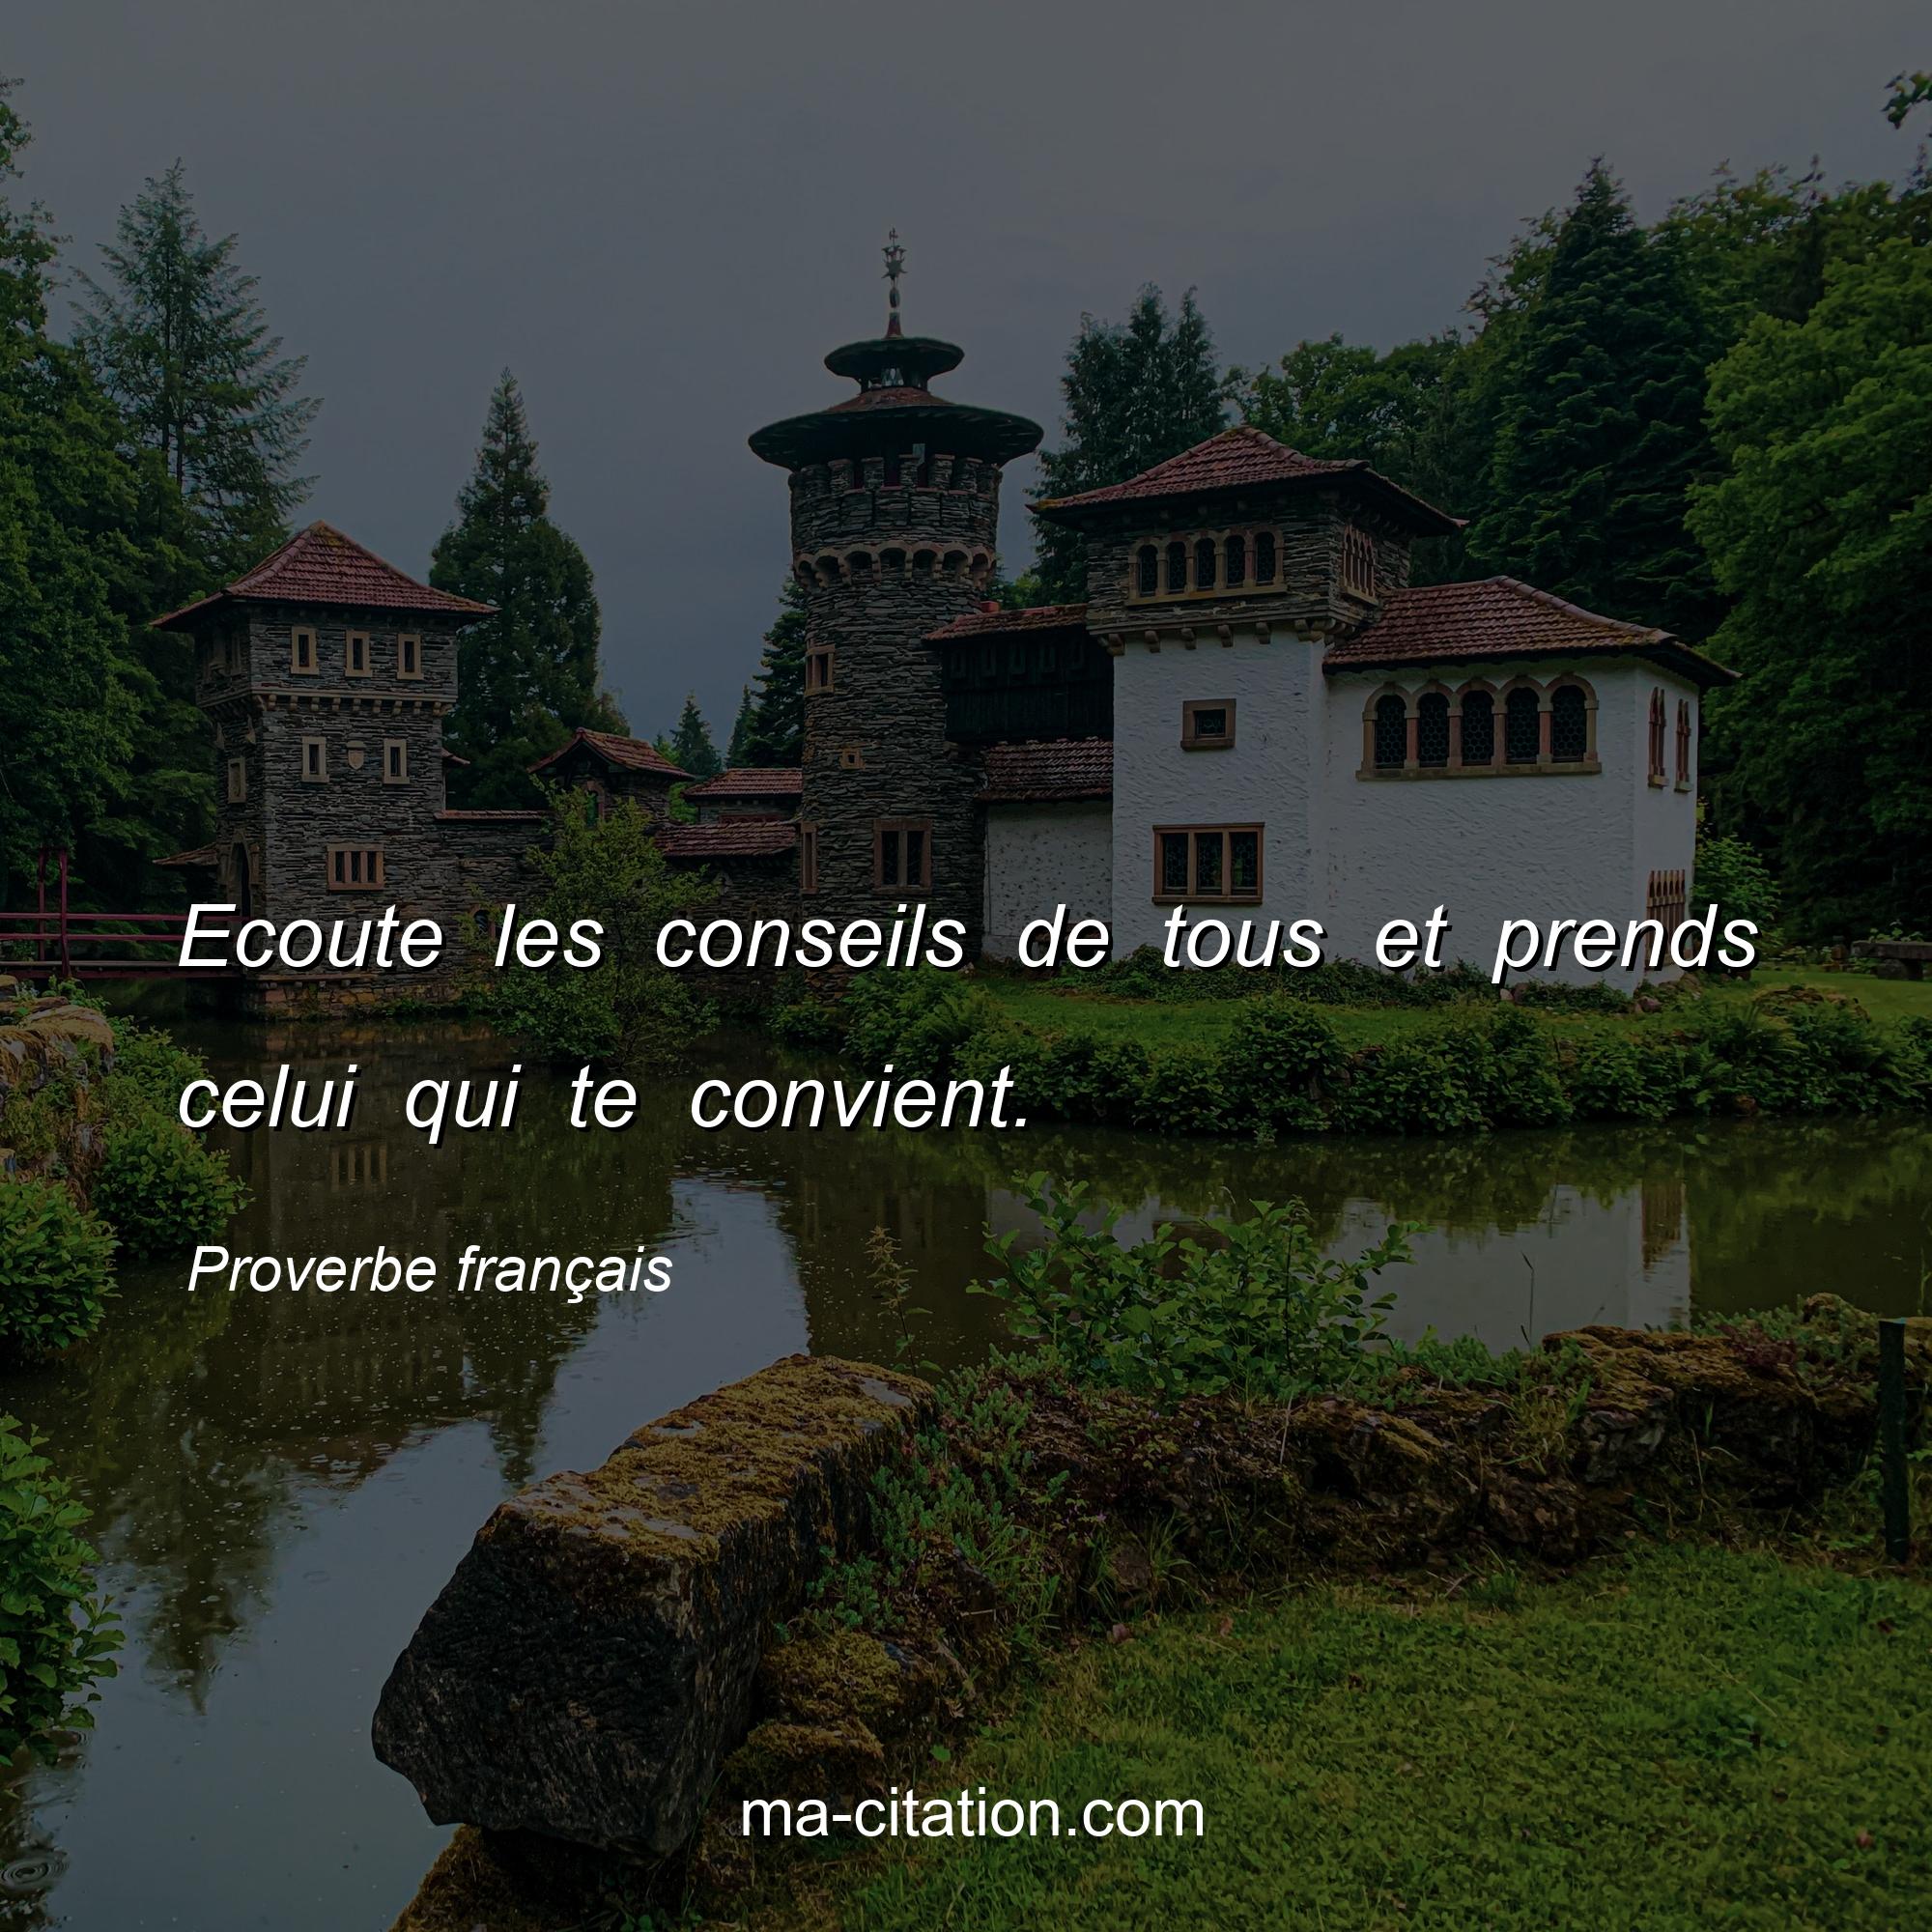 Proverbe français : Ecoute les conseils de tous et prends celui qui te convient.